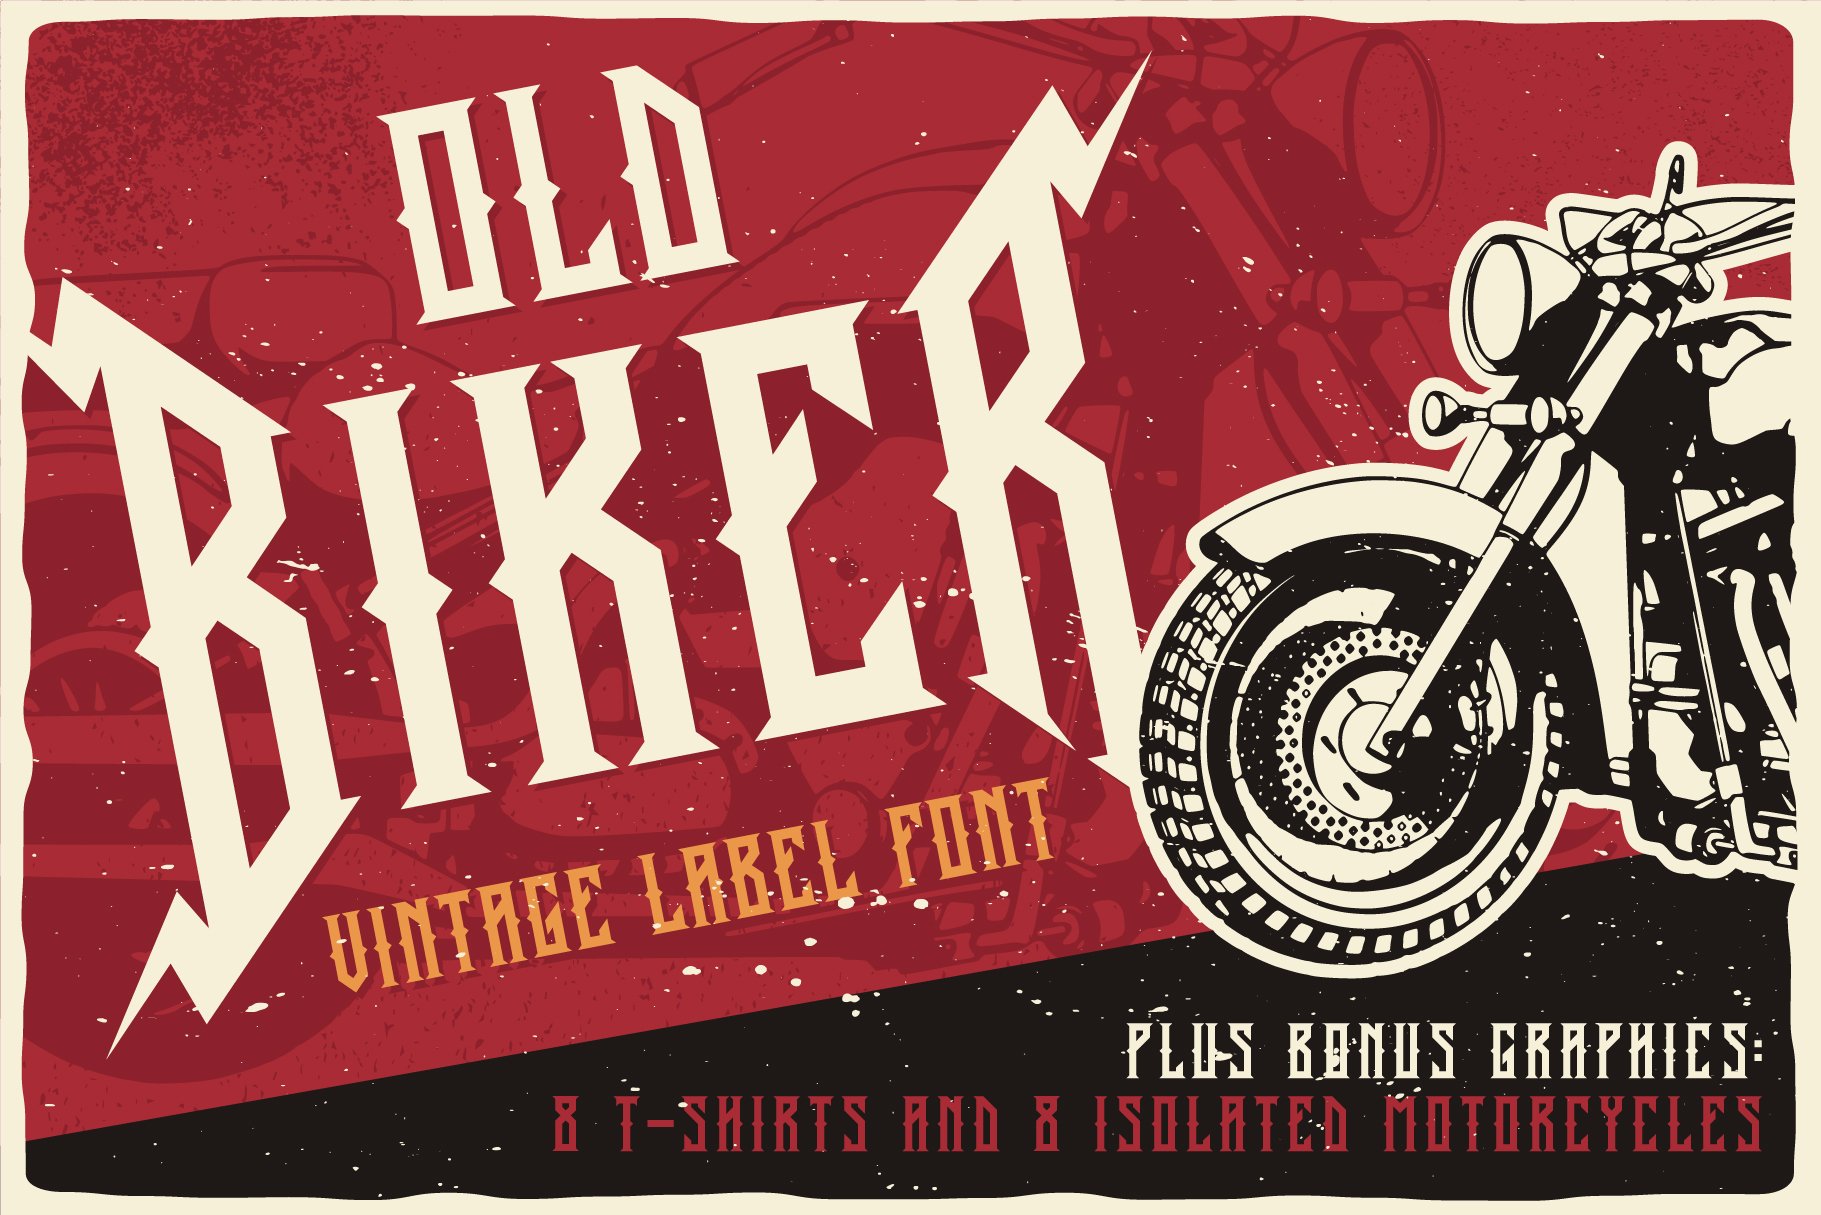 Old Biker Label Font + Bonus cover image.